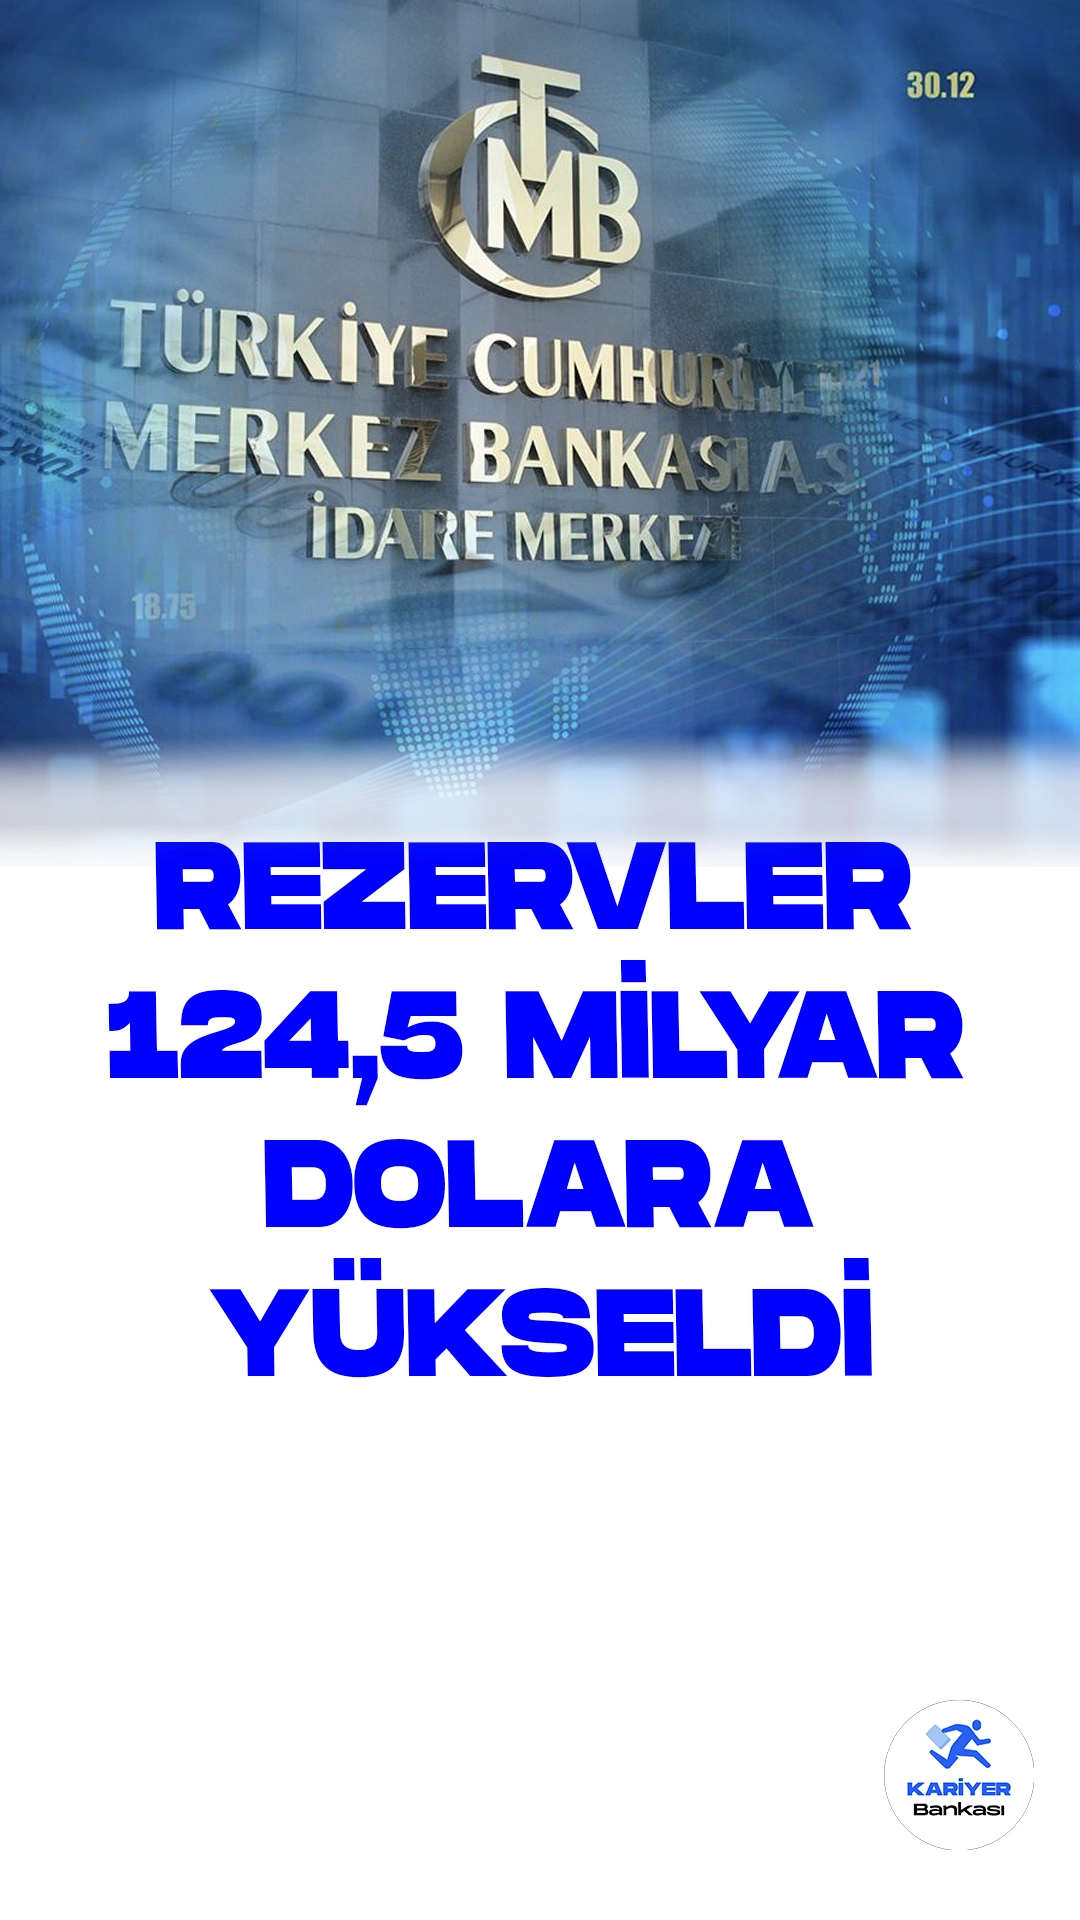 Merkez Bankası Toplam Rezervleri 124,5 Milyar Dolara Yükseldi.Türkiye Cumhuriyet Merkez Bankası, 13 Ekim haftasında toplam rezervlerini bir önceki haftaya göre 1 milyar 615 milyon dolar artırarak 124 milyar 498 milyon dolar seviyesine taşıdı. Haftalık Para ve Banka İstatistikleri verilerine göre, Merkez Bankası brüt döviz rezervleri 13 Ekim itibarıyla 83 milyar 307 milyon dolar seviyesine çıktı; bu, bir hafta içinde 155 milyon dolarlık artış anlamına gelirken, brüt döviz rezervleri bir önceki hafta 83 milyar 152 milyon dolar seviyesindeydi.